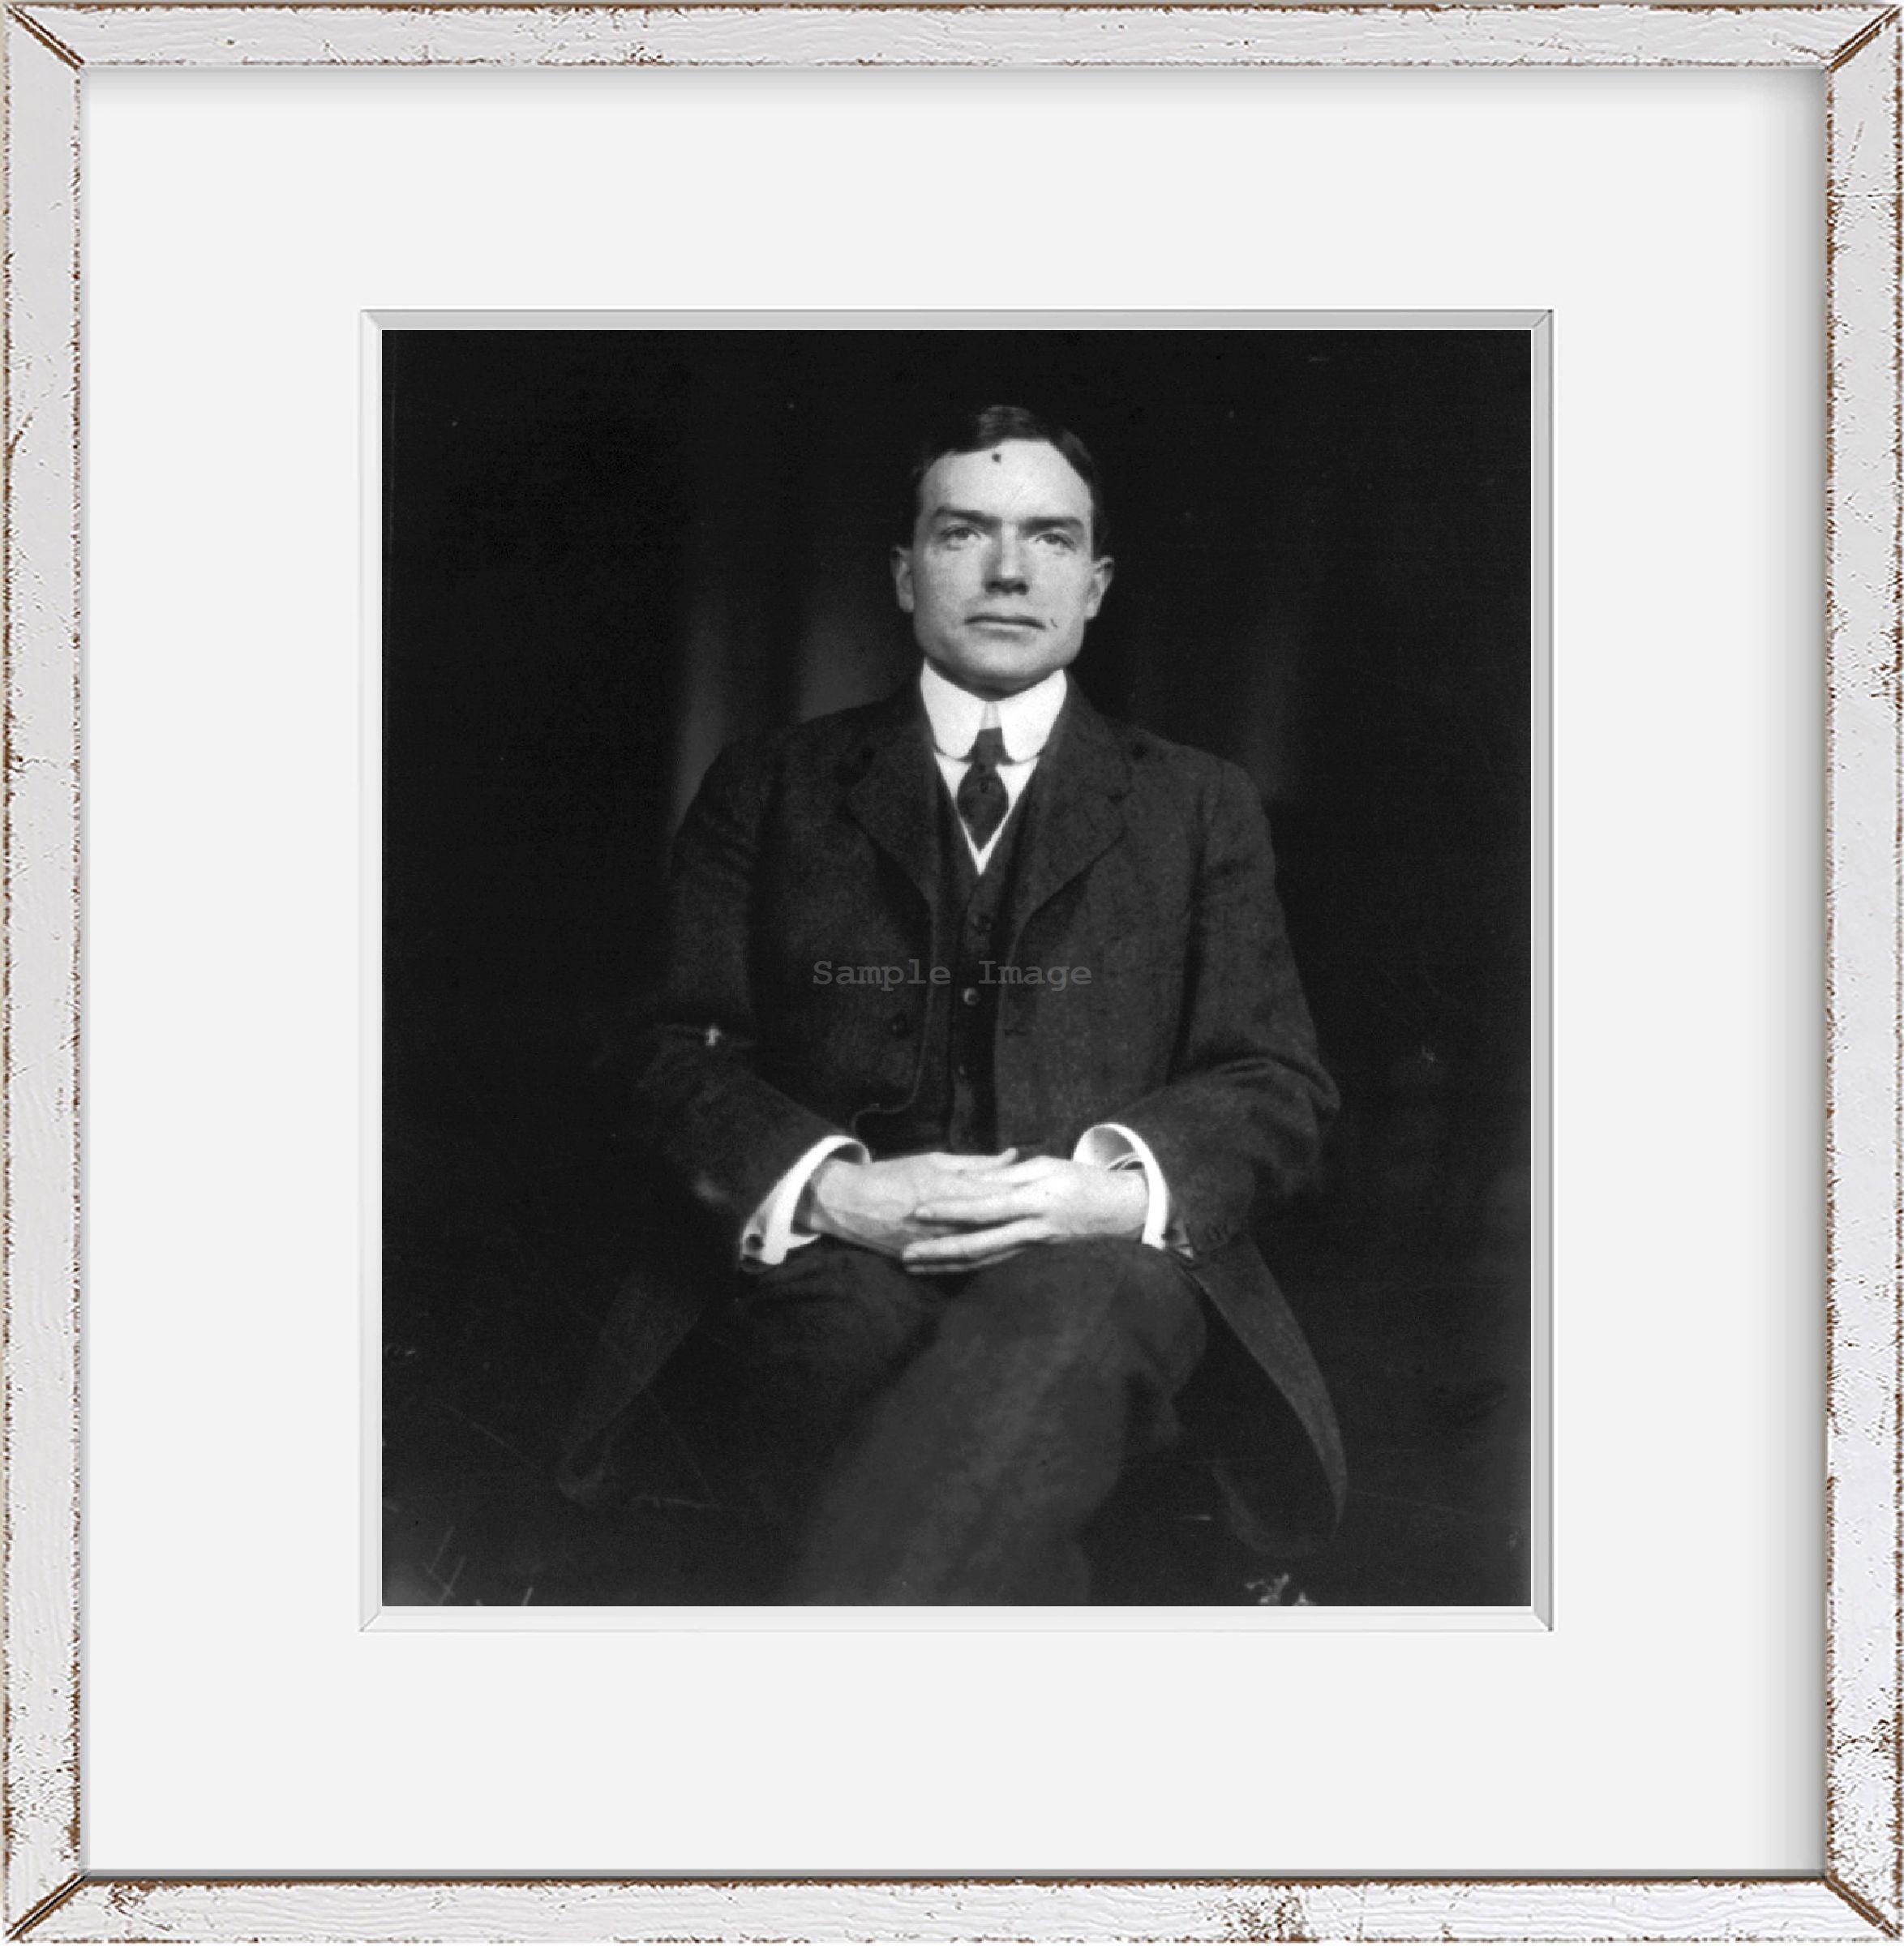 Photo: John D. Rockefeller, Jr. circa 1915